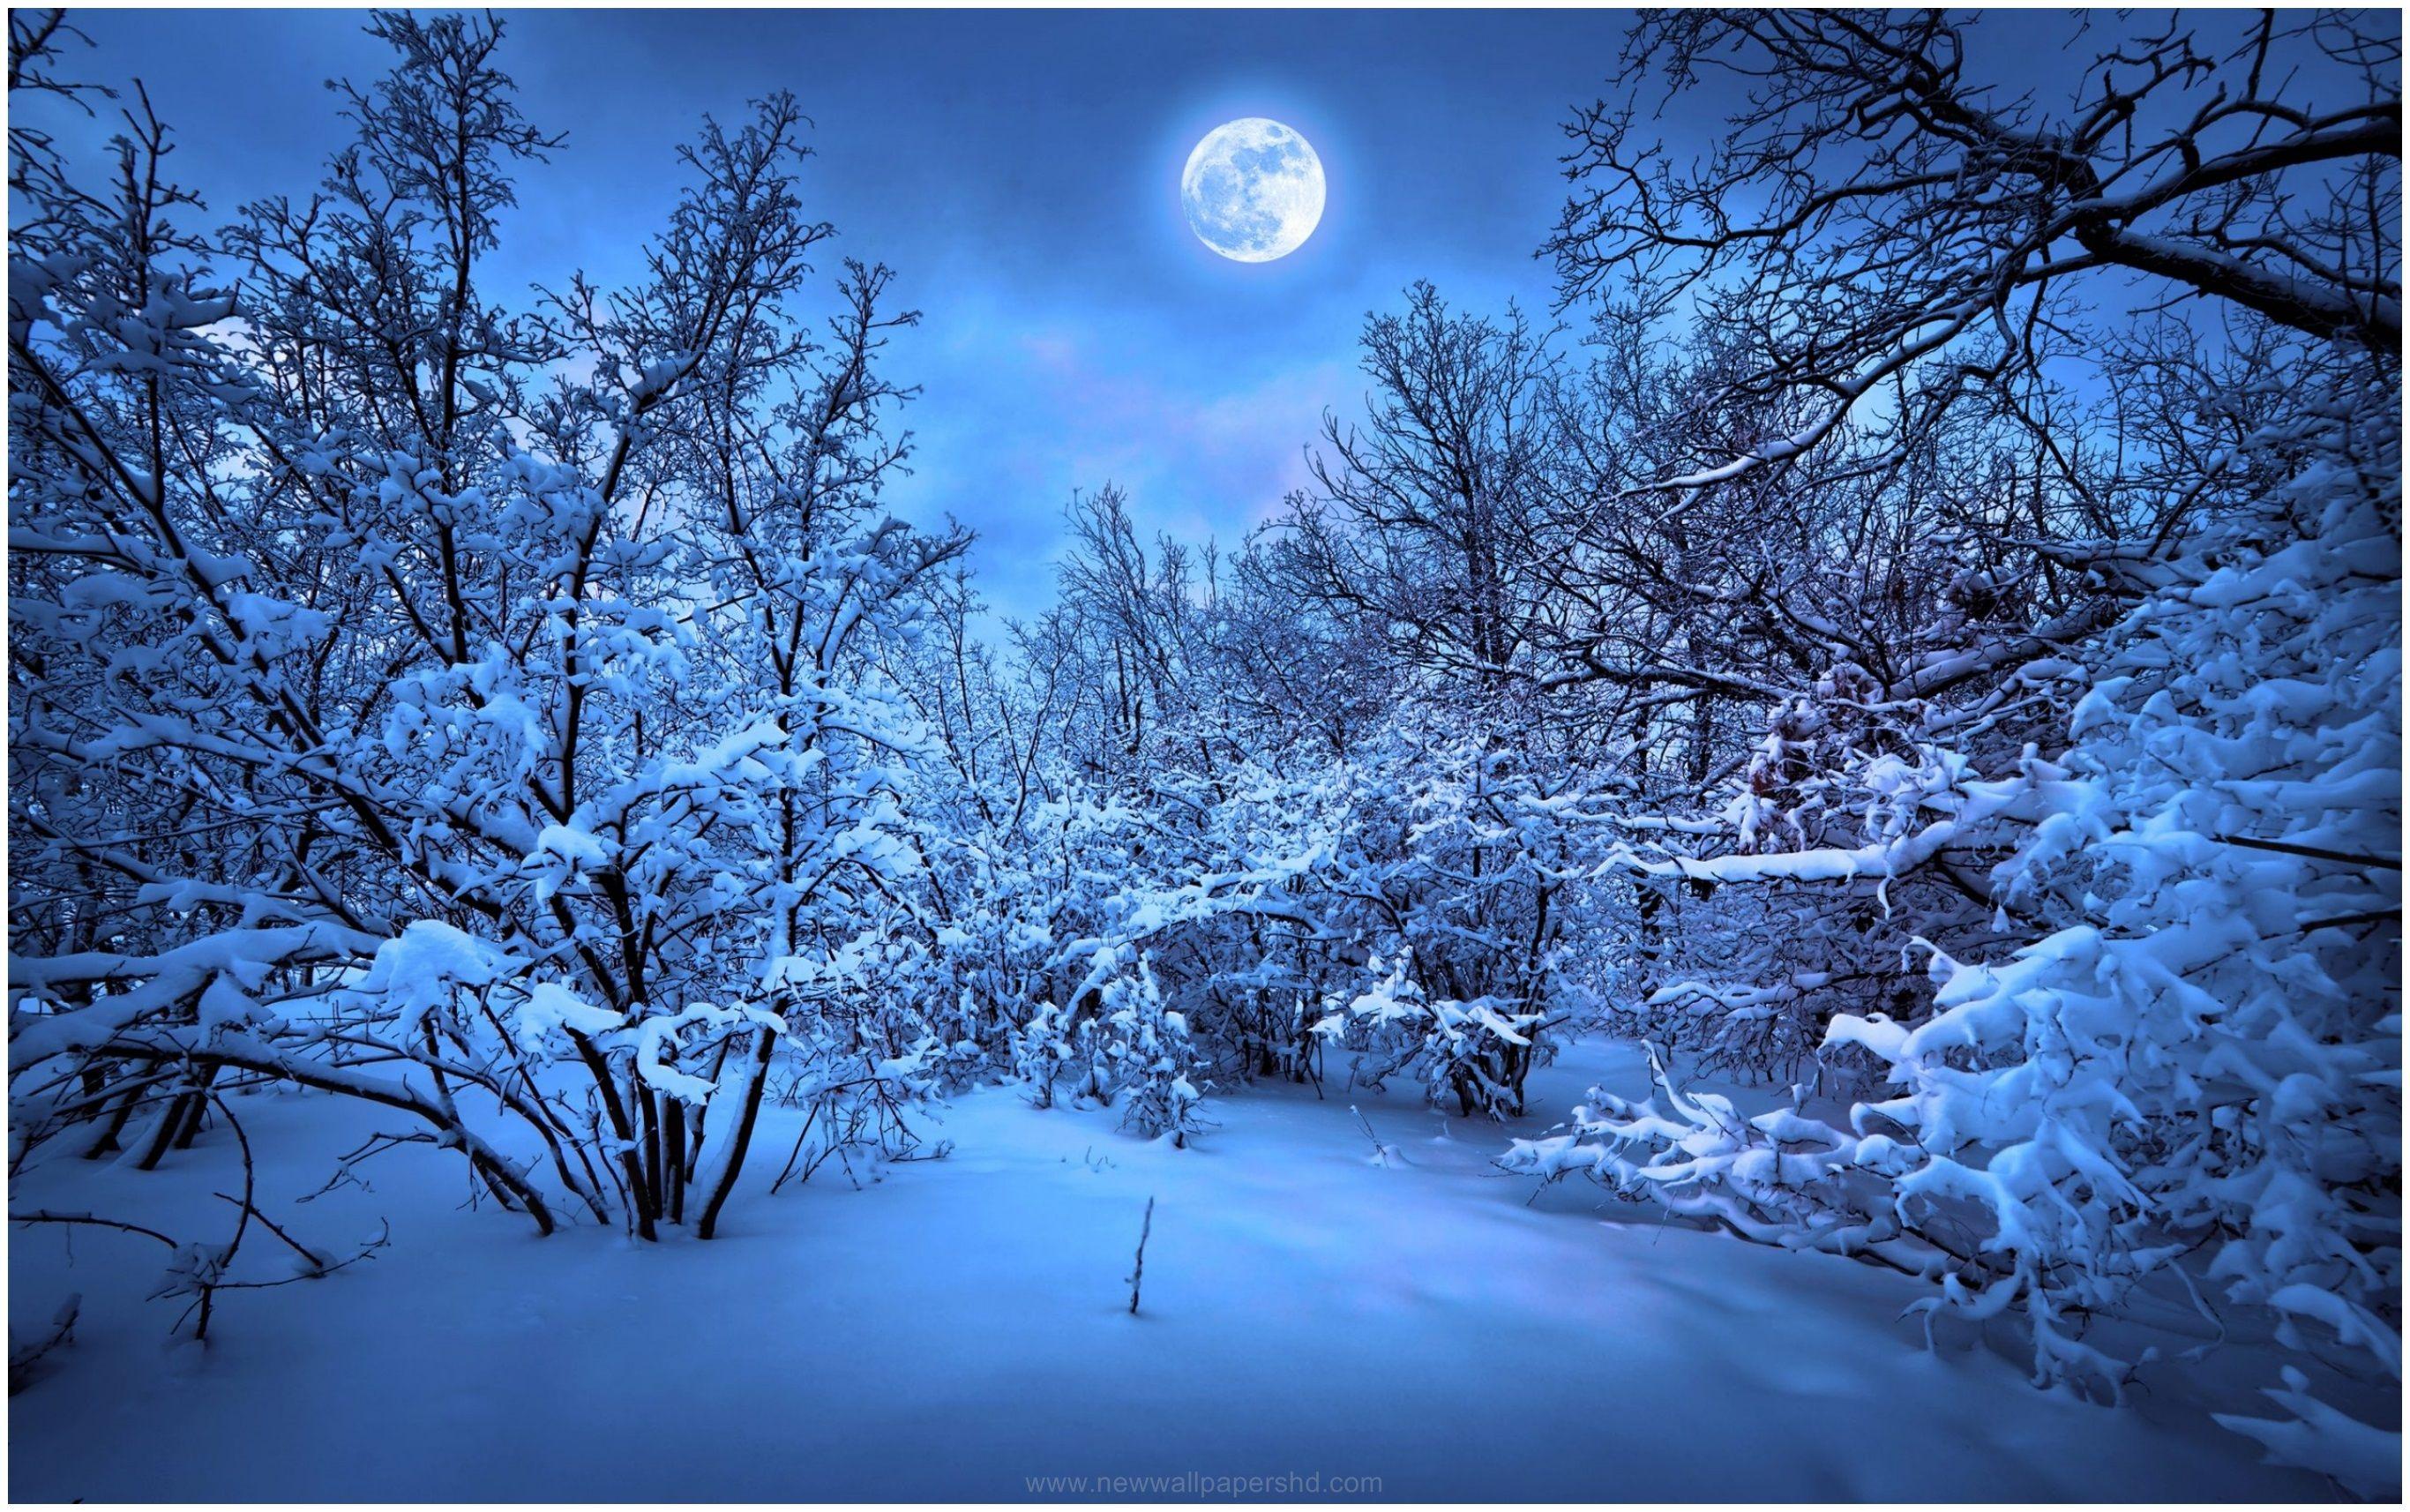 WINTER NIGHTS FULL MOON HD WALLPAPER. Winter night, Winter